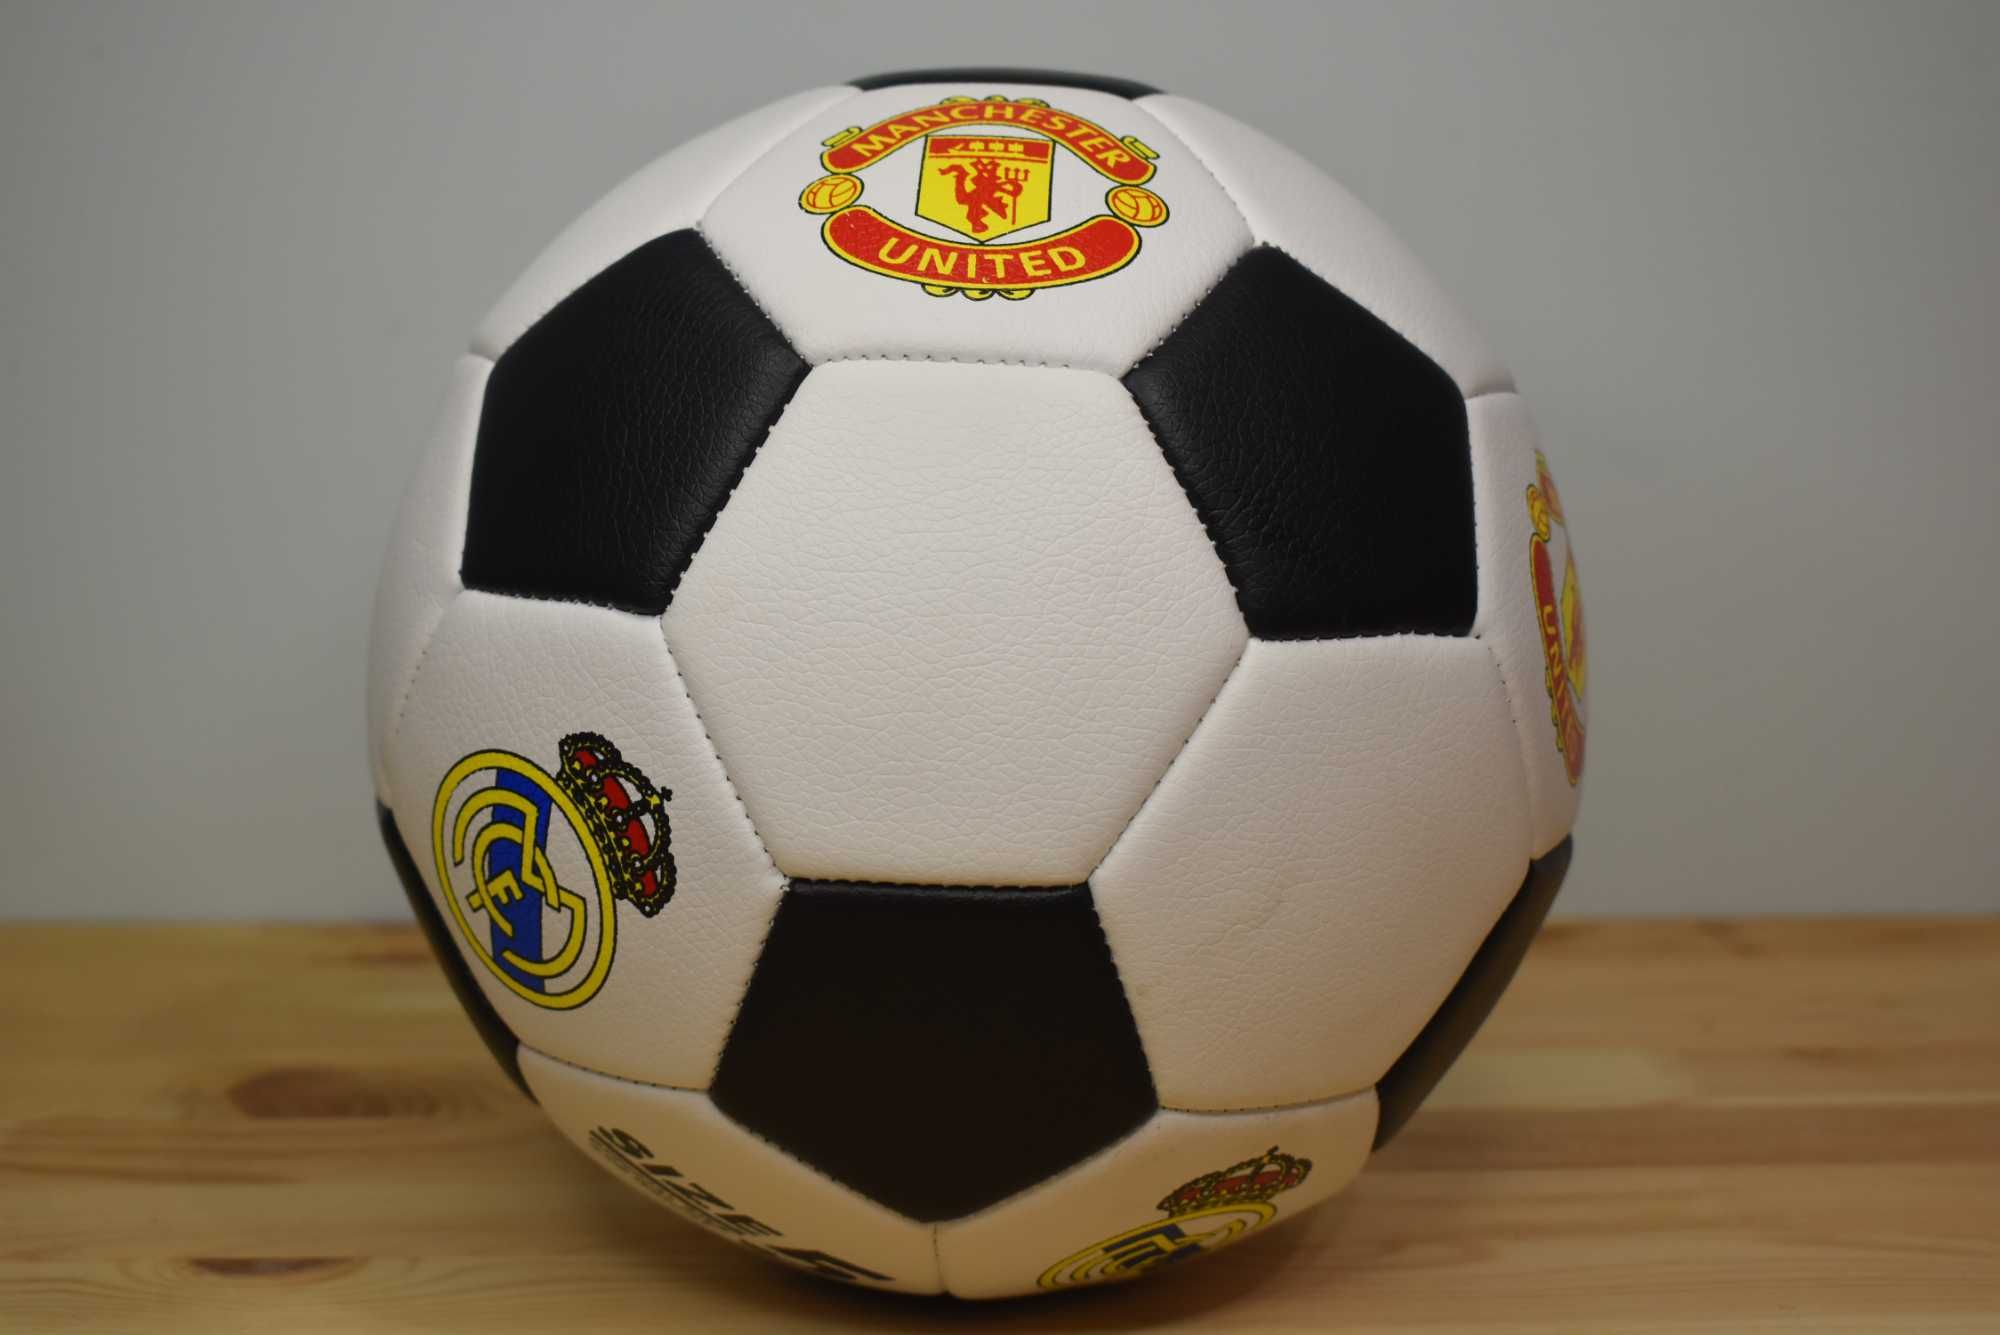 М'яч футбольний, вага 420 грамів, матеріал PU, балон гумовий